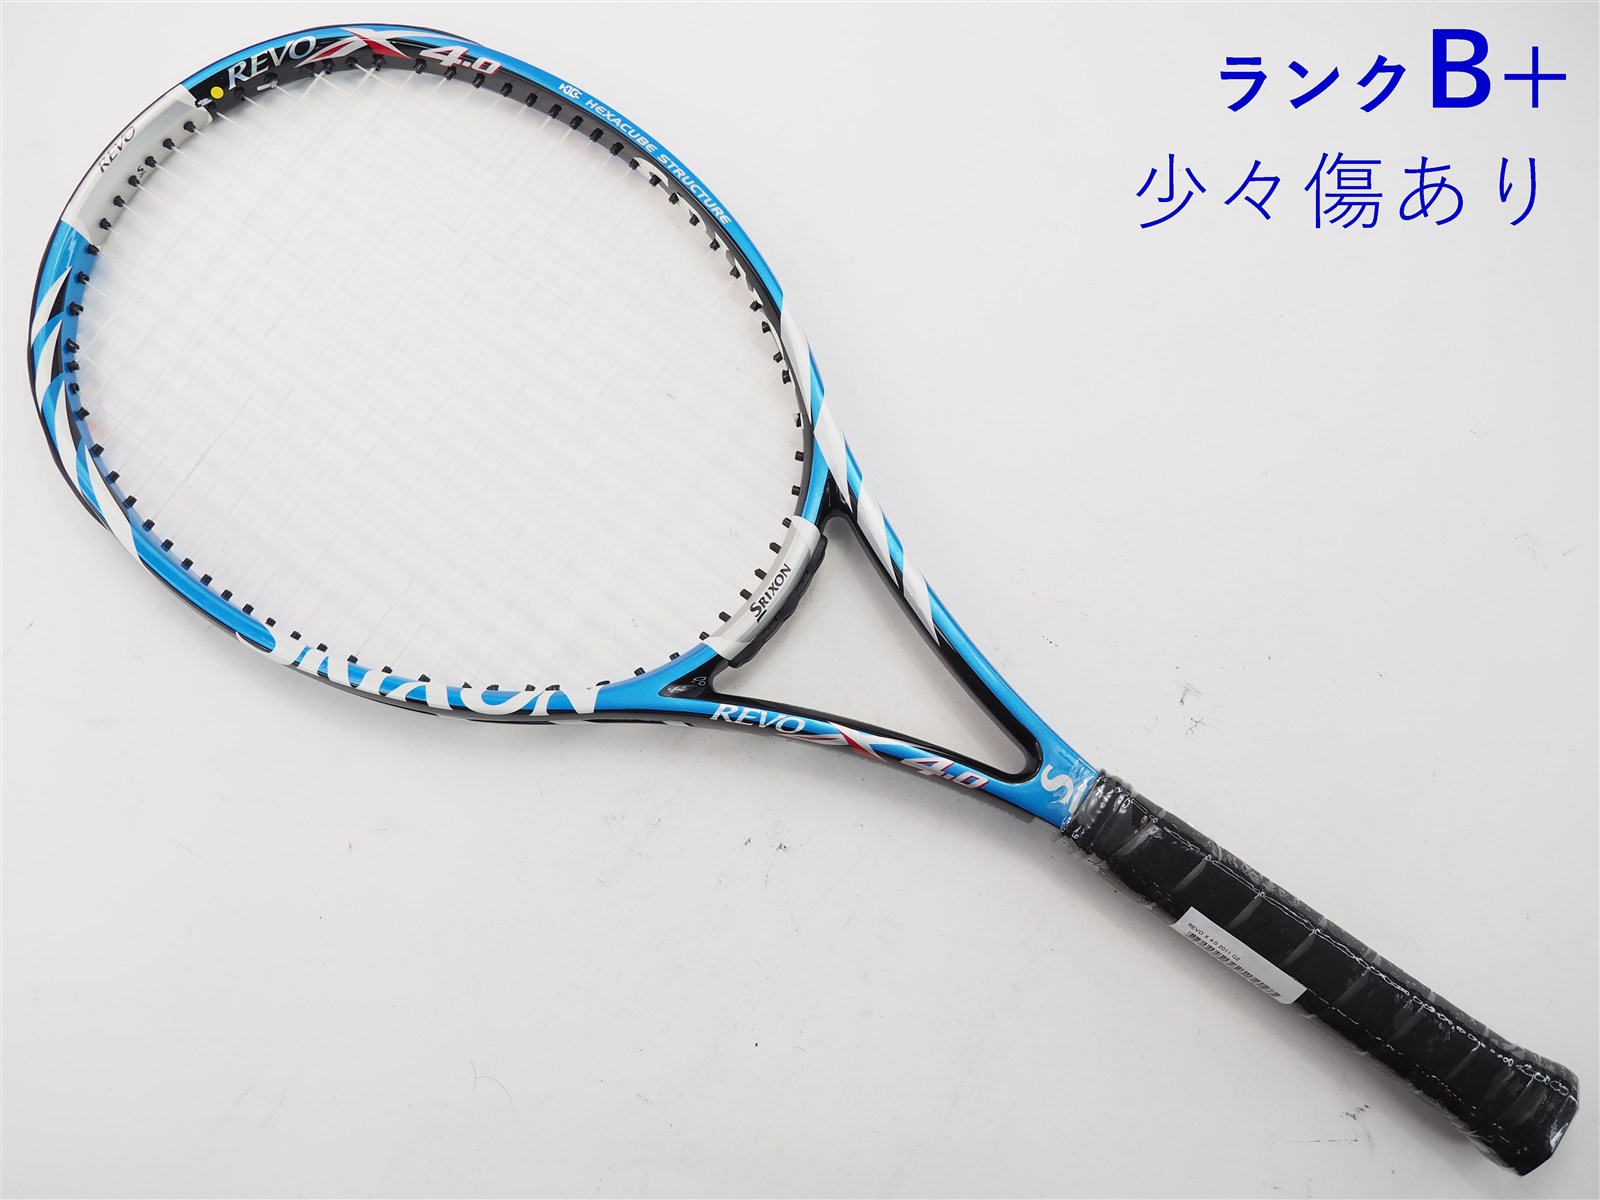 テニスラケット スリクソン レヴォ エックス 4.0 2013年モデル (G2)SRIXON REVO X 4.0 2013